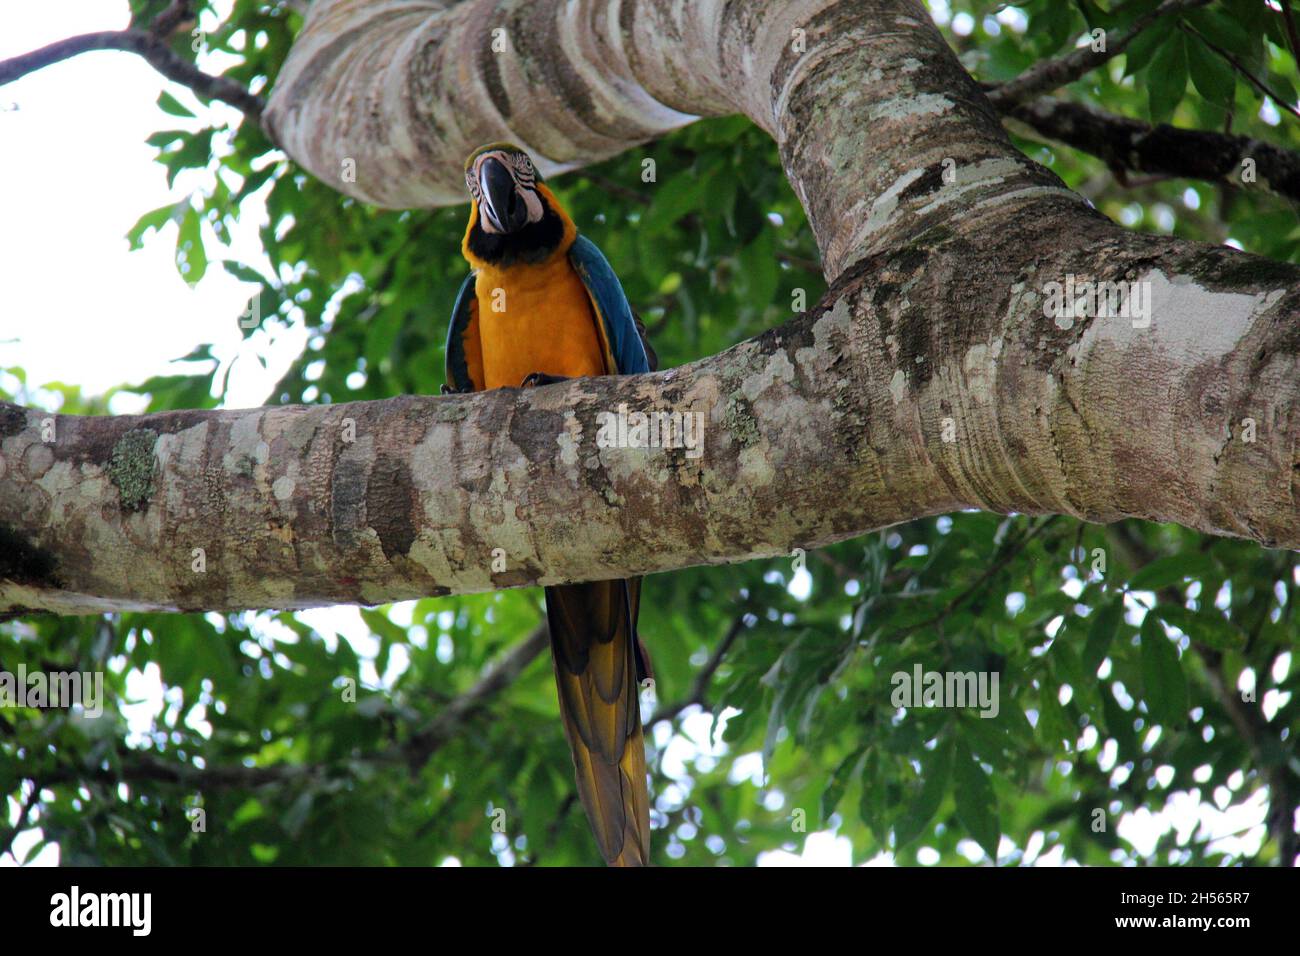 Gelber und blauer Papagei auf einem Baumstamm, mit verschwommenem Hintergrund, Blick von unten in Bonito - Mato Grosso do Sul - Brasilien. Stockfoto